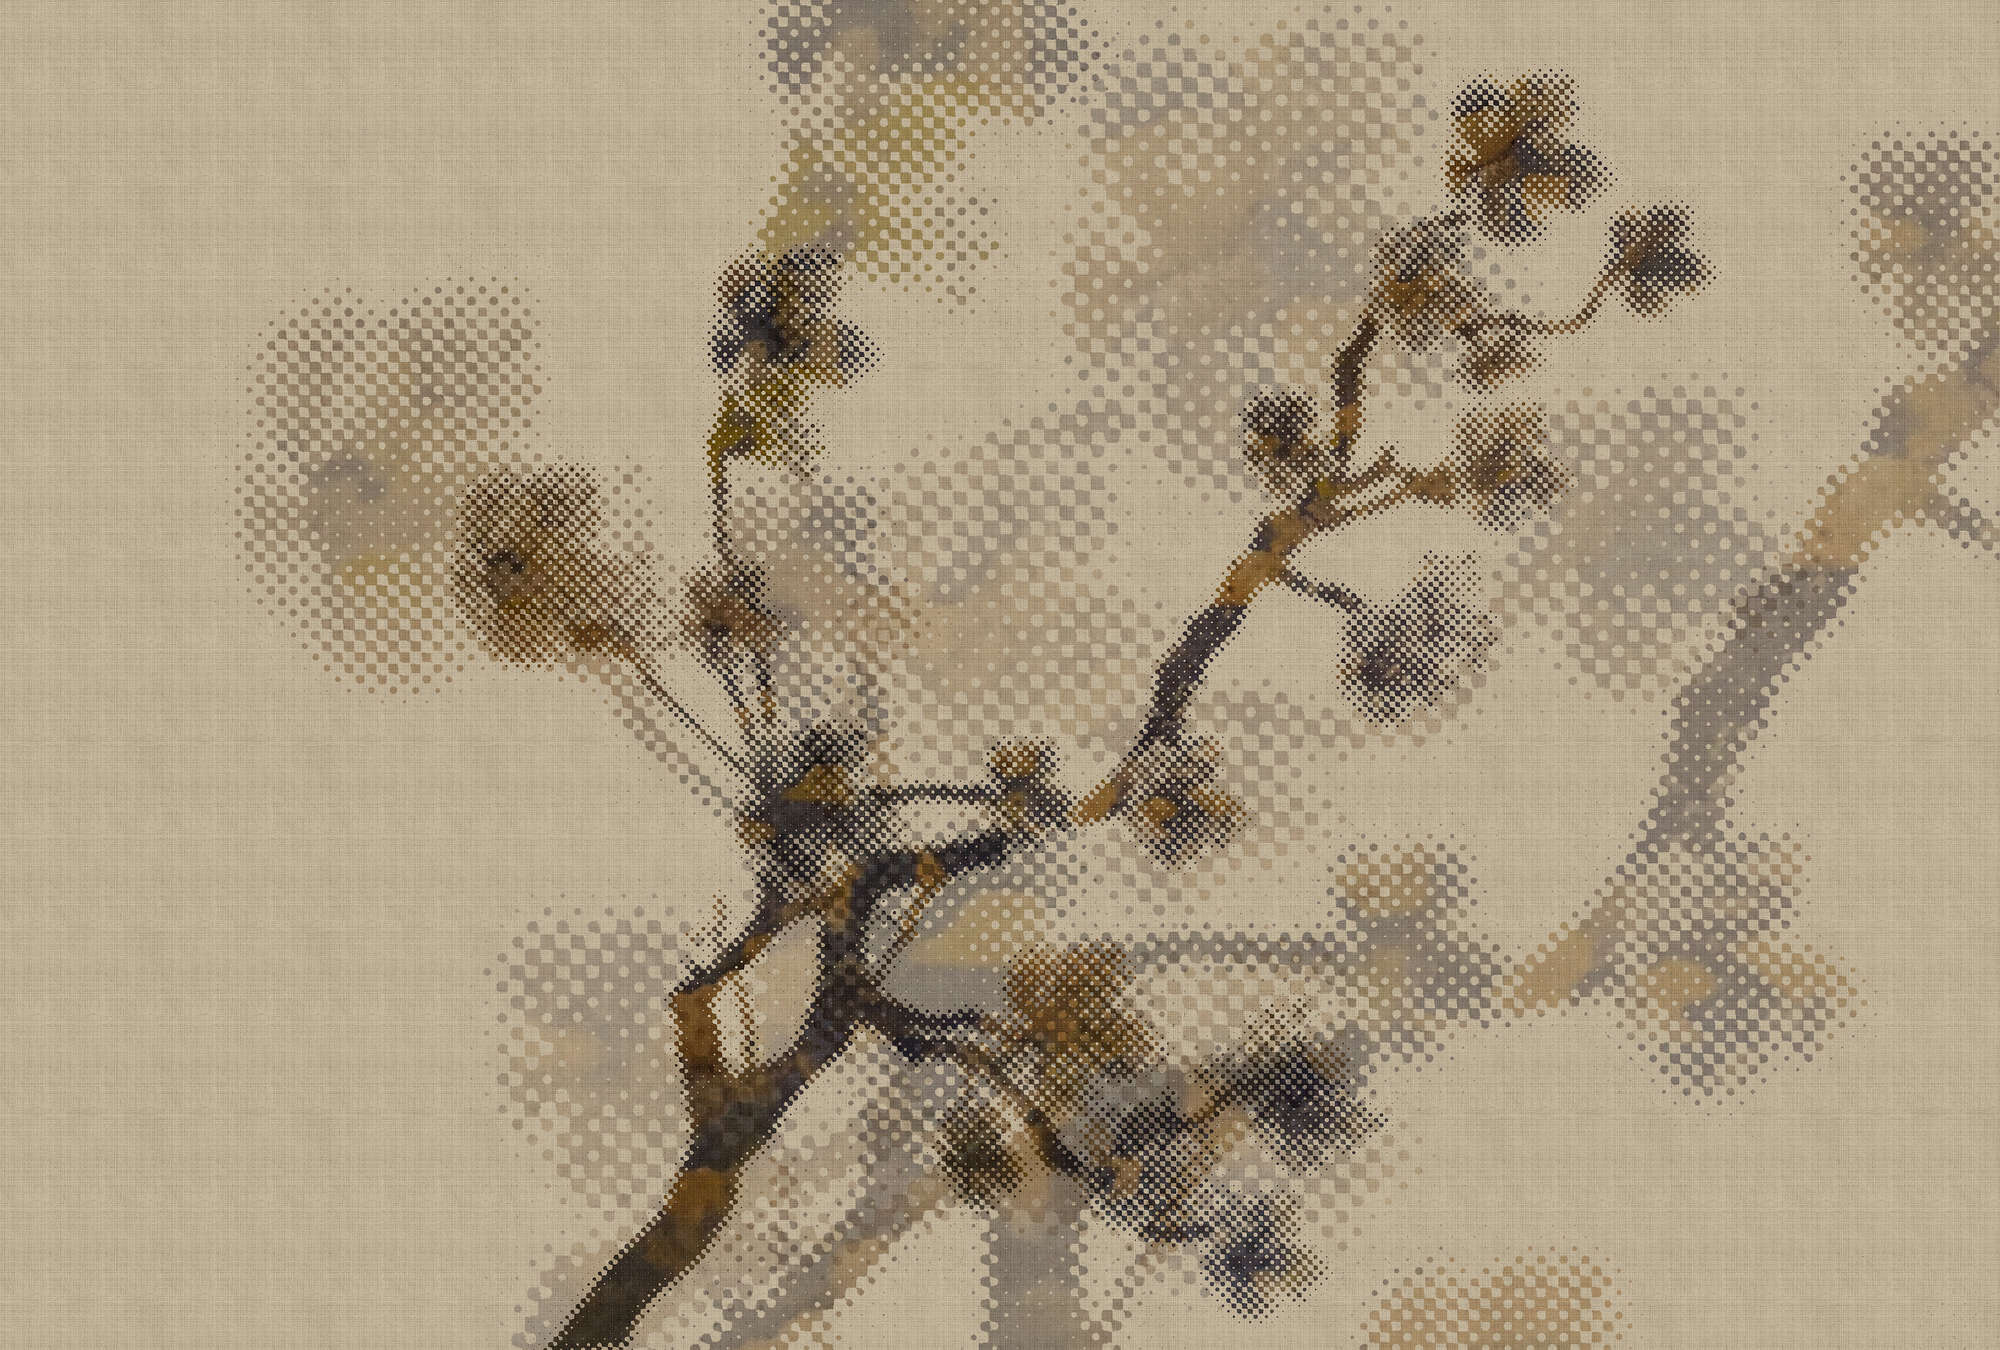             Twigs 2 - Onderlaag behang in natuurlijke linnenstructuur met twijgjesmotief & pixeldessin - Beige | parelmoer glad vlies
        